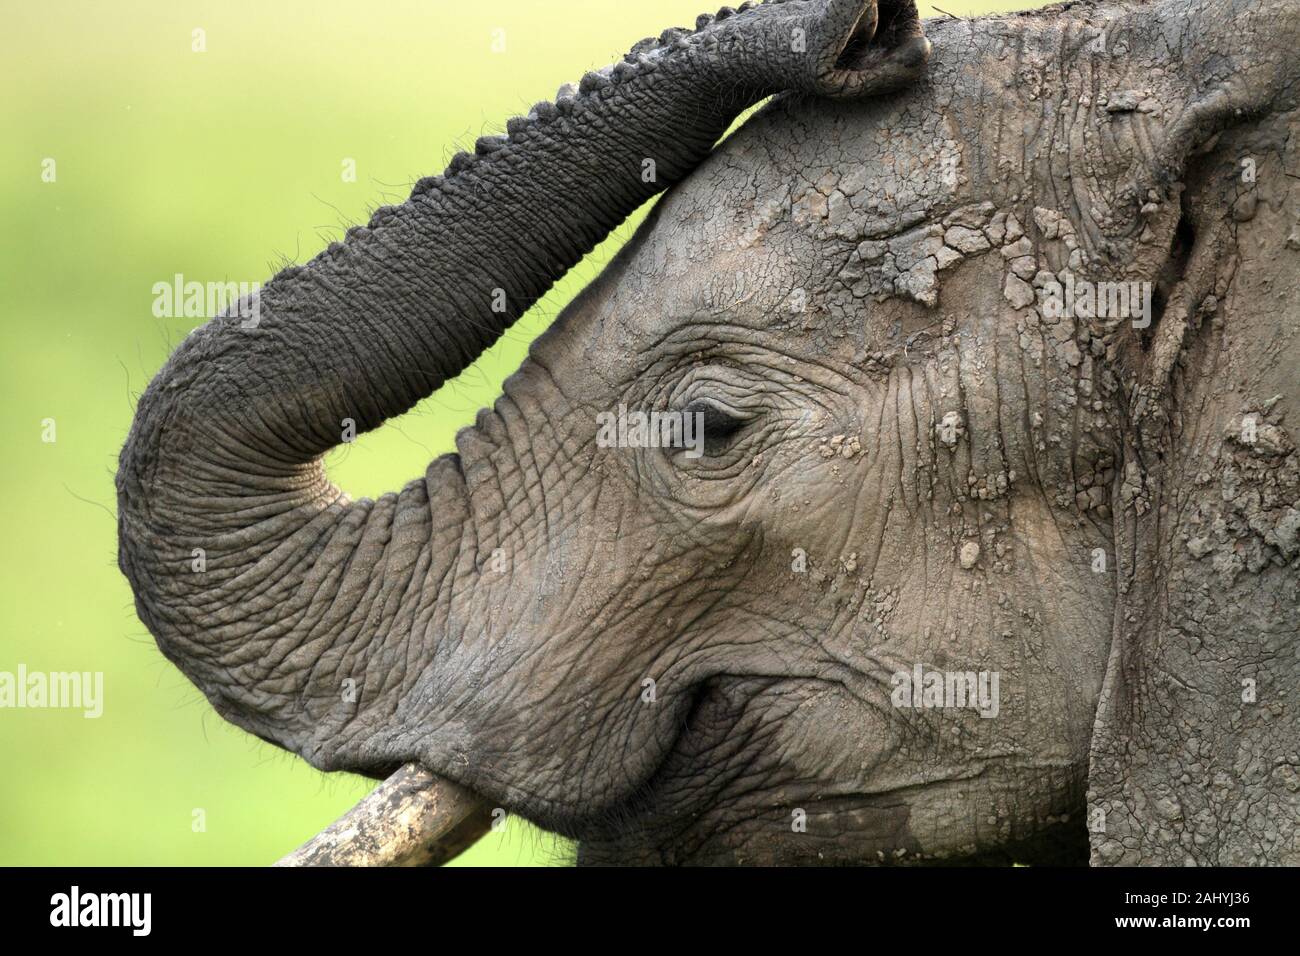 Der Russel Des Elefanten Ist Ein Sehr Flexibles Langlichen Nase Angepasst Als Hand Verwendet Mit Einem Ausgezeichneten Geruchssinn Hier Ist Es Zu Sehen Wie Stockfotografie Alamy